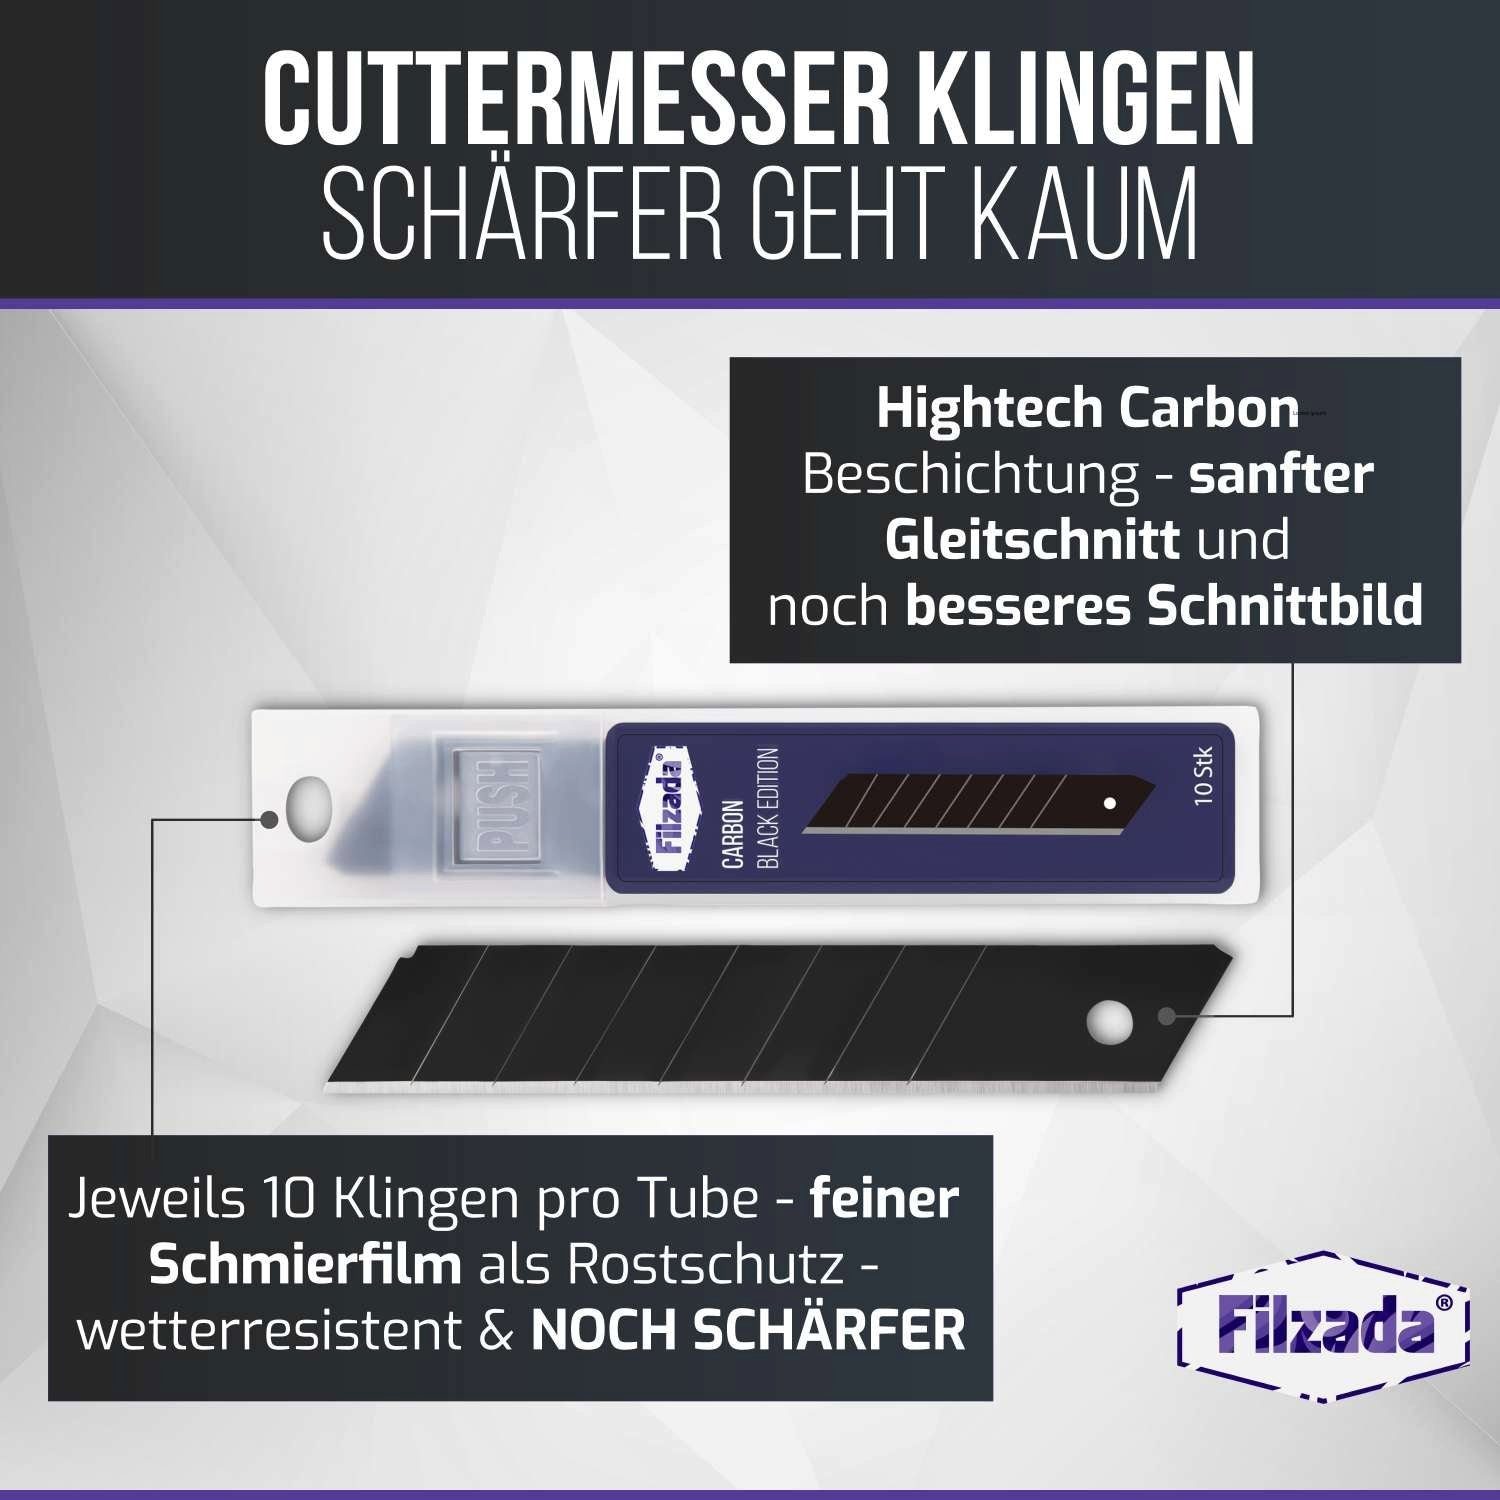 Filzada Cuttermesser Klingen Cutterklingen 50x 18mm Cuttermesser Carbonstahl Abbrechklingen